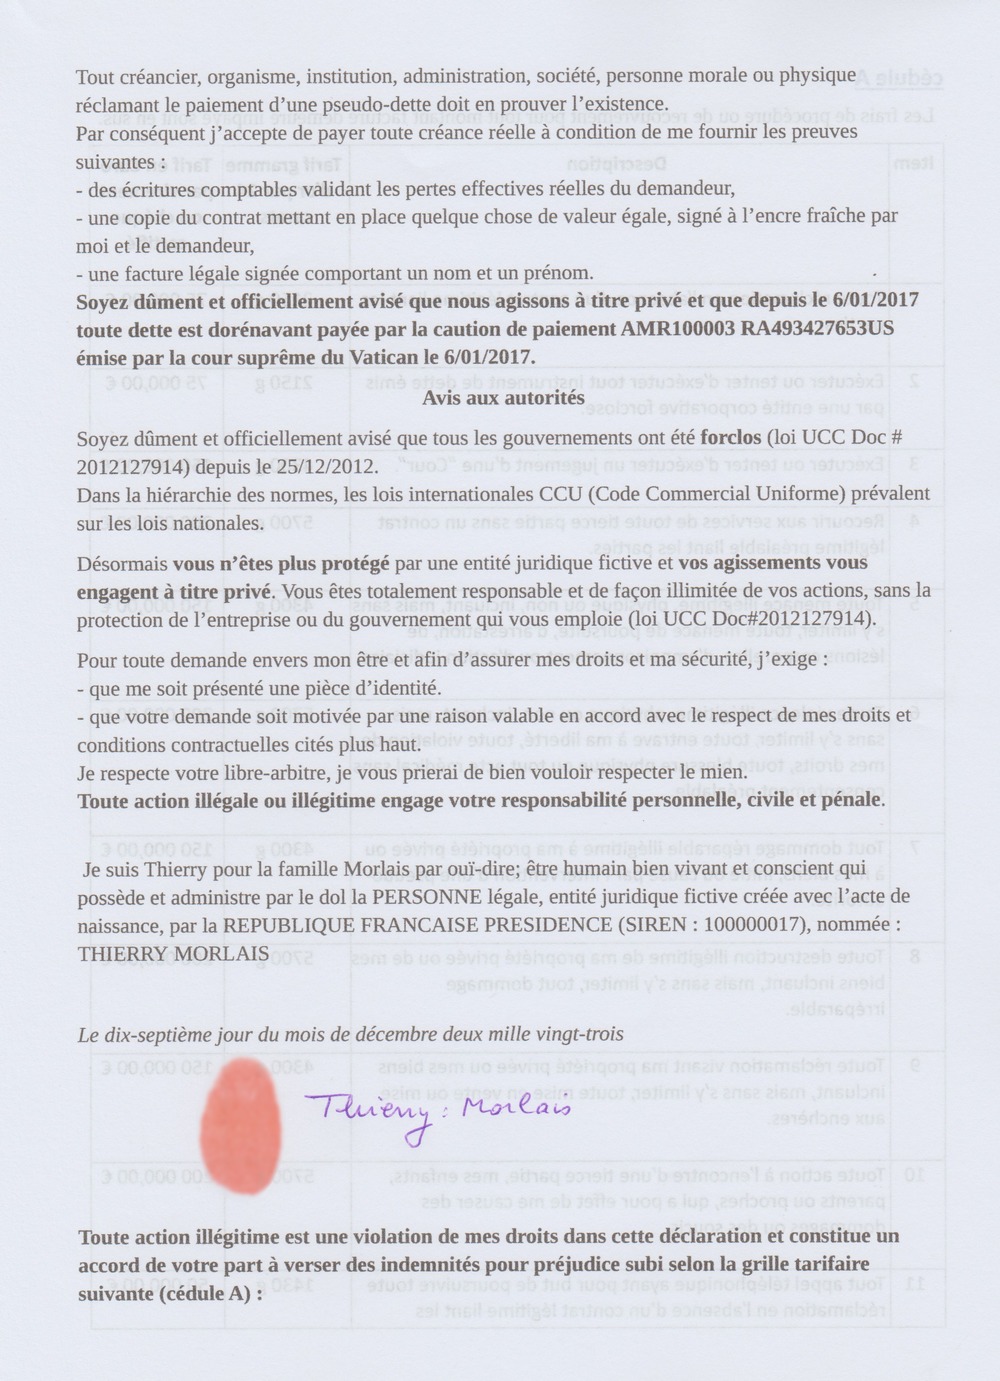 proclamation des droits autographe Thierry